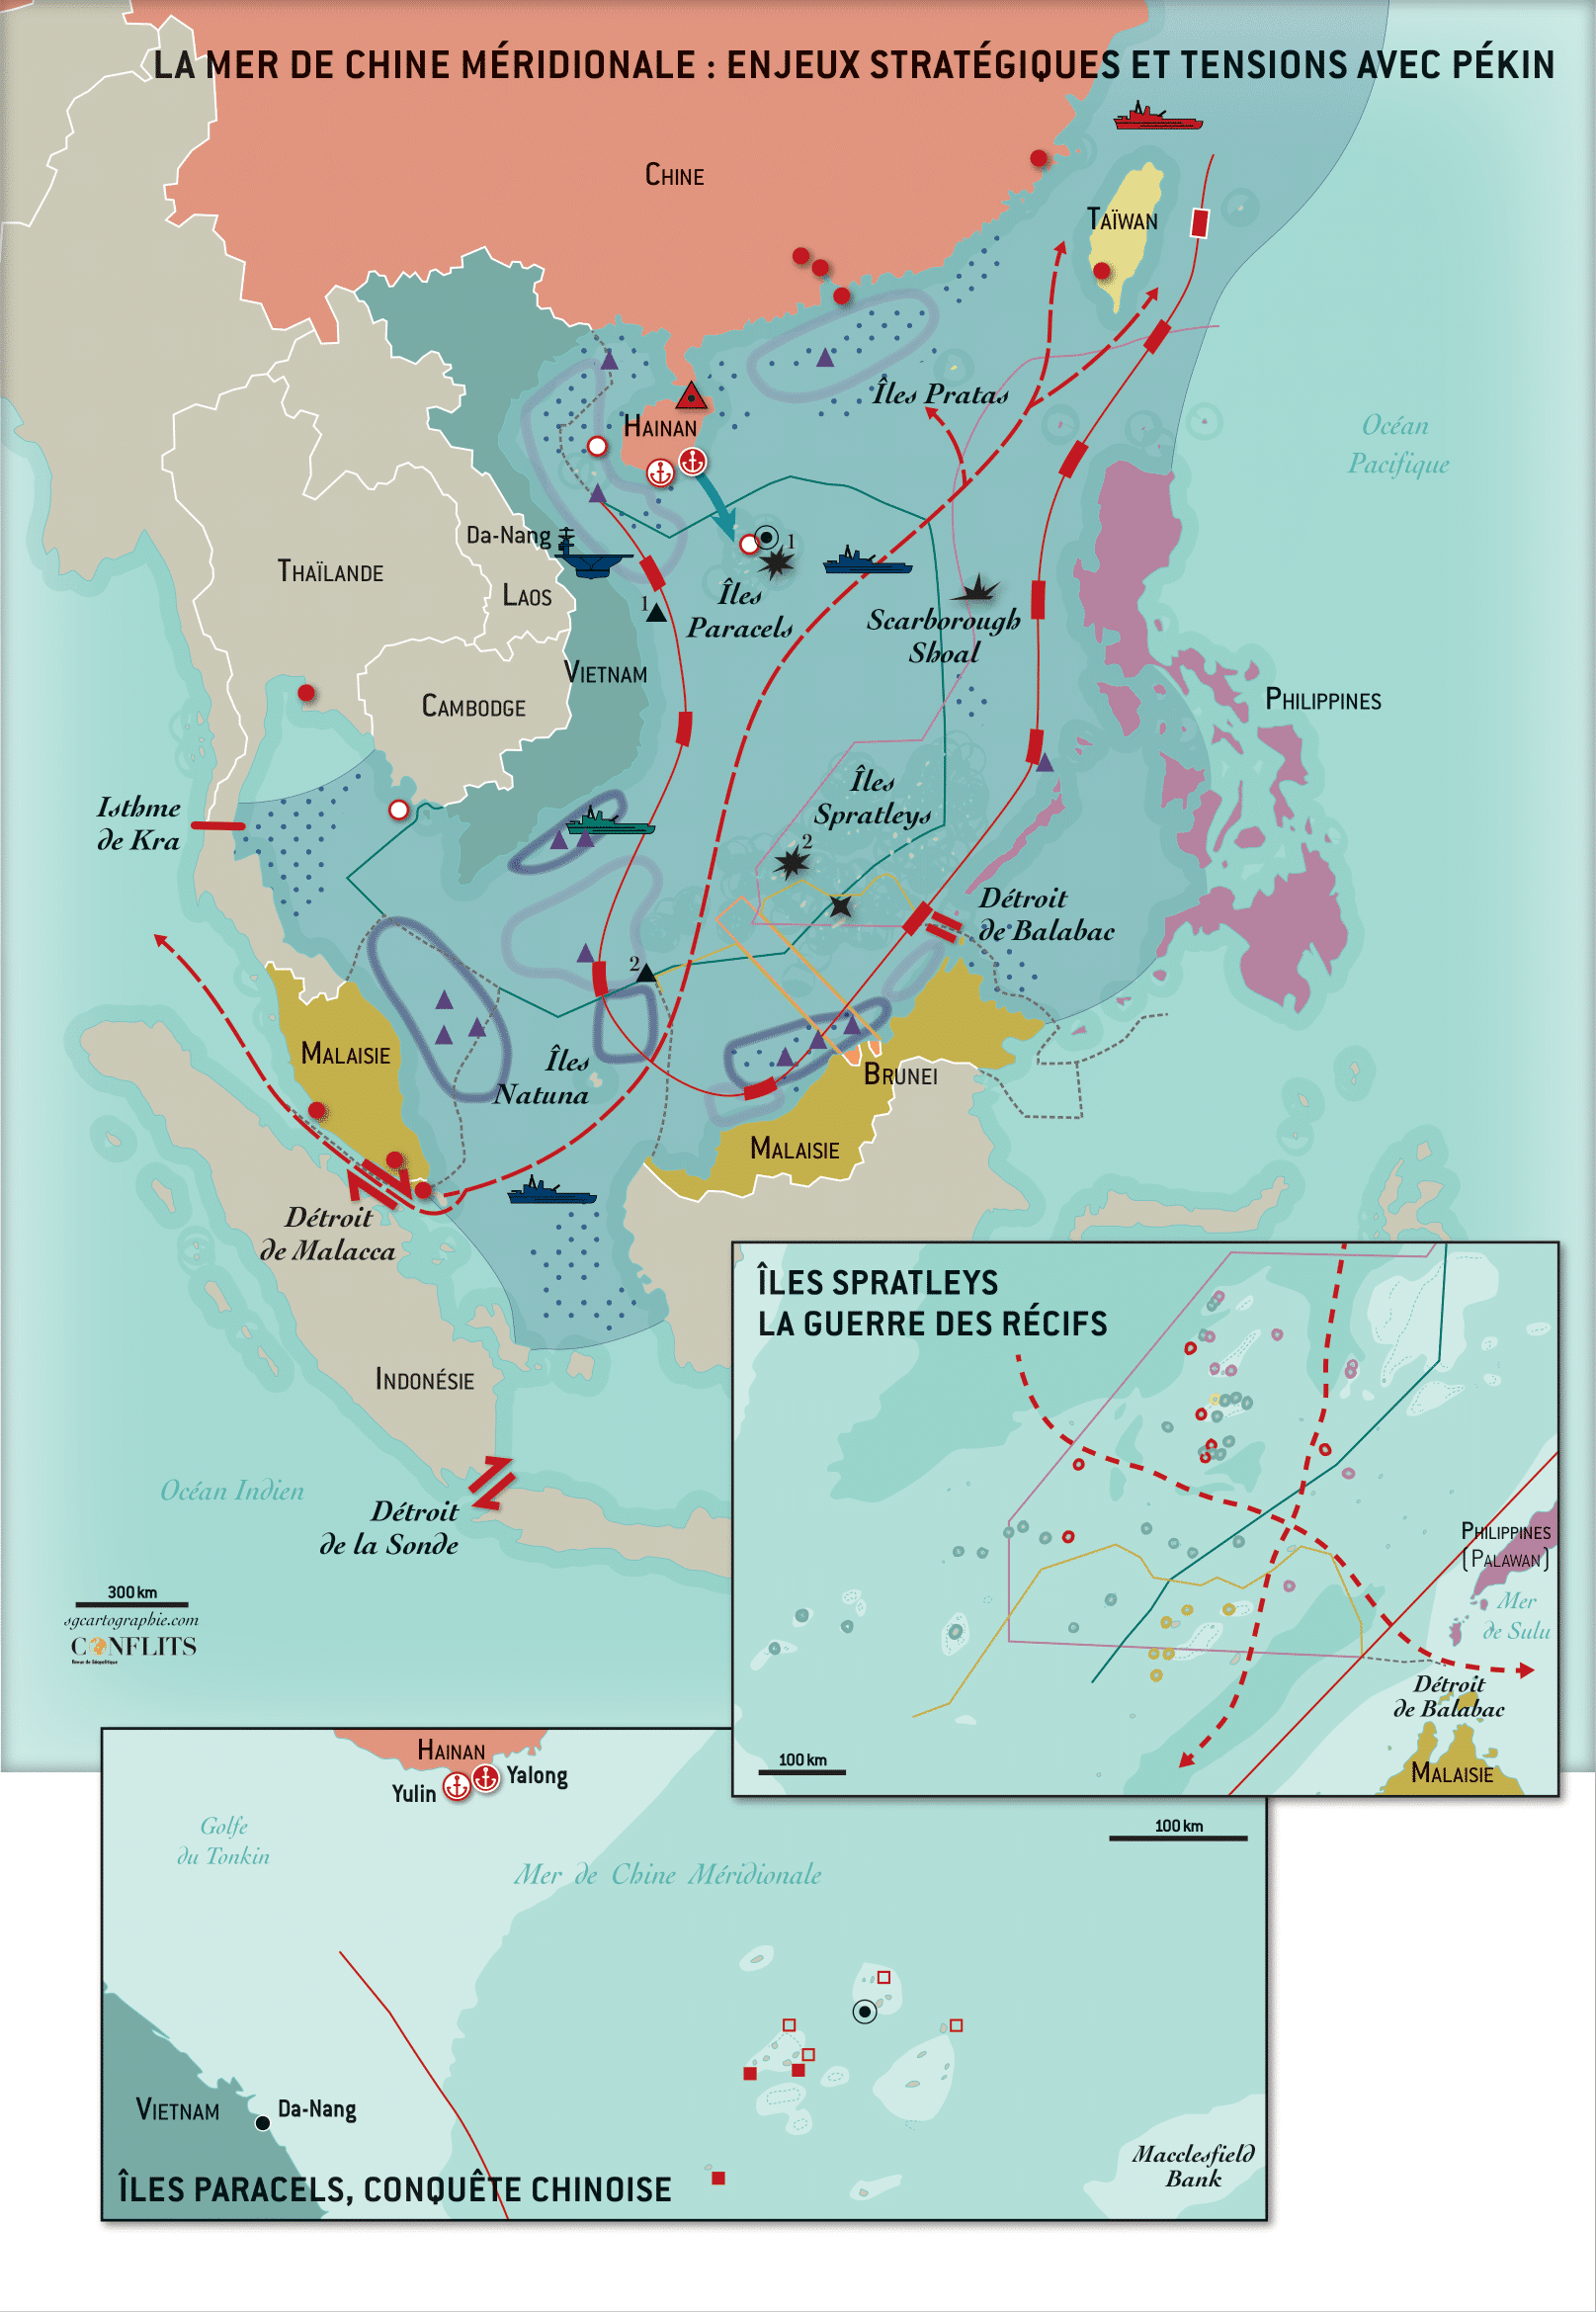 La Malaisie et son domaine maritime : un enjeu autant économique que sécuritaire